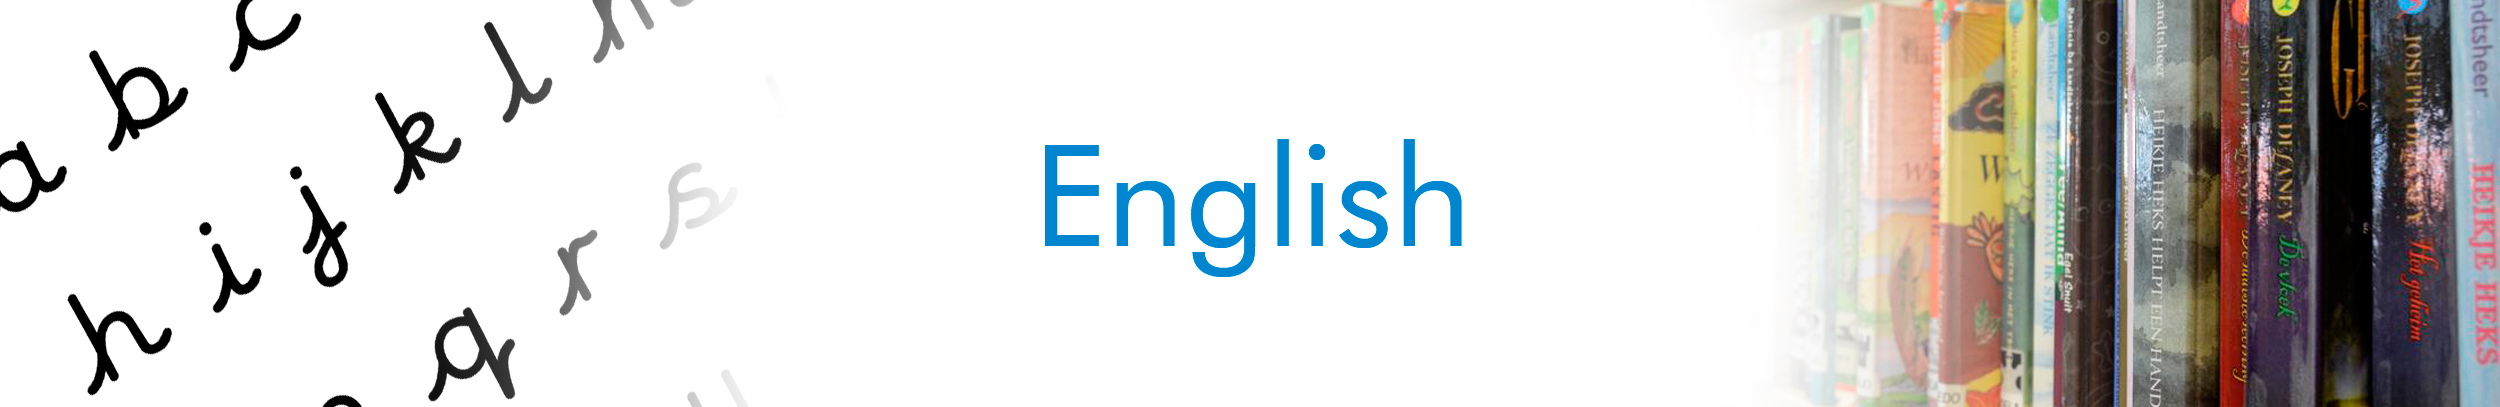 Langmaster - Effortless English